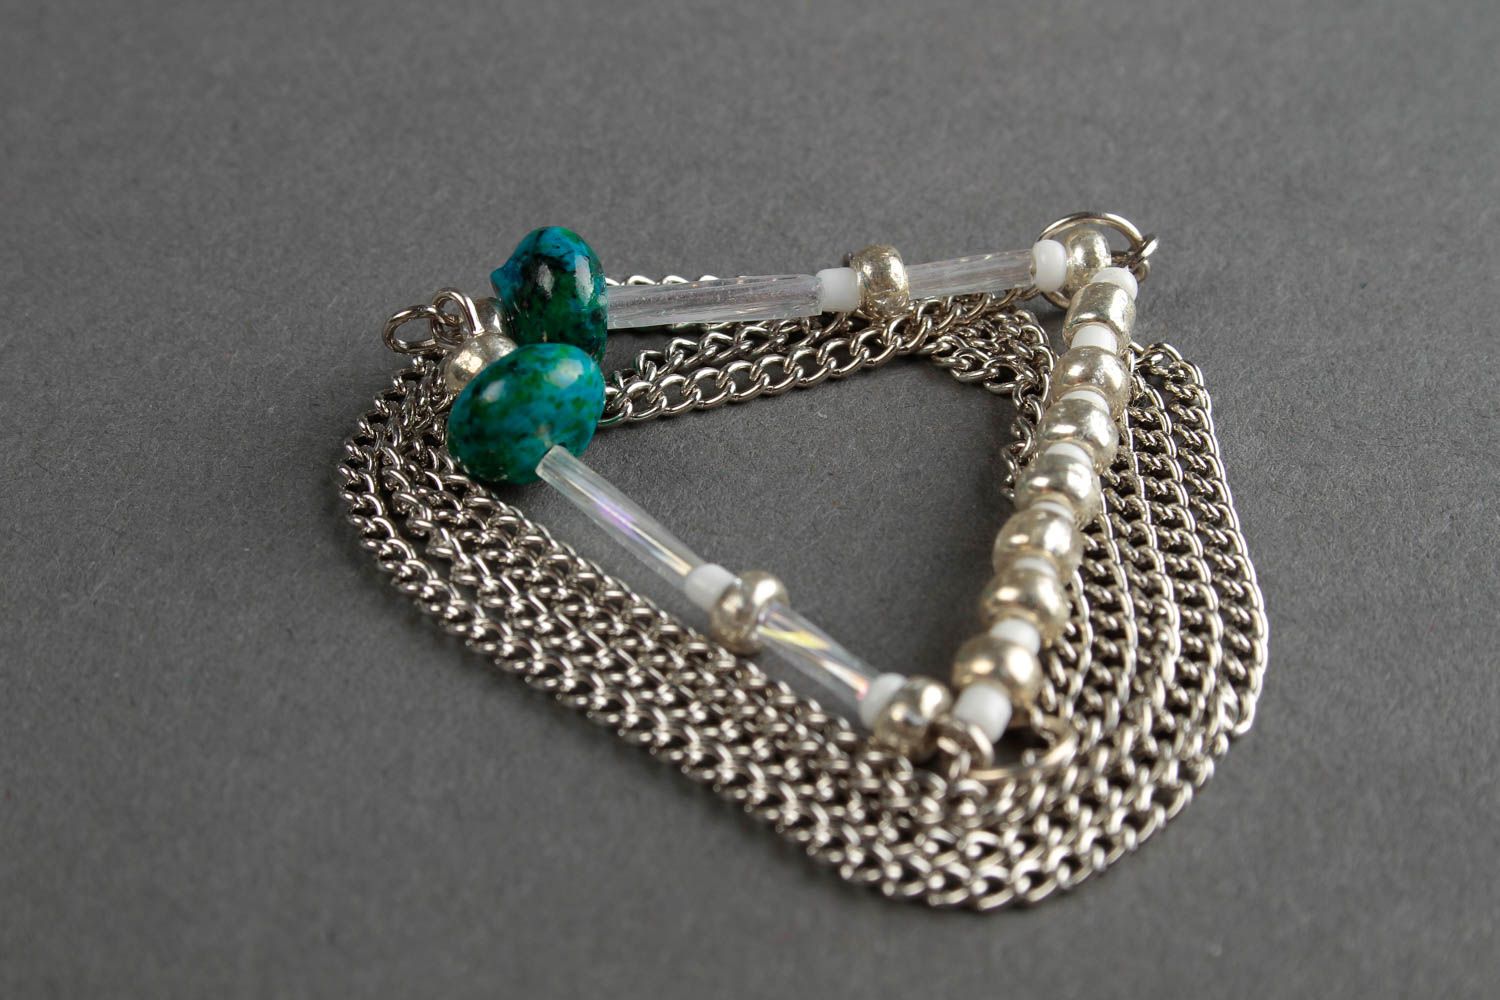 Chain pendant handmade long pendant beaded pendant fashion bijouterie for girls photo 5